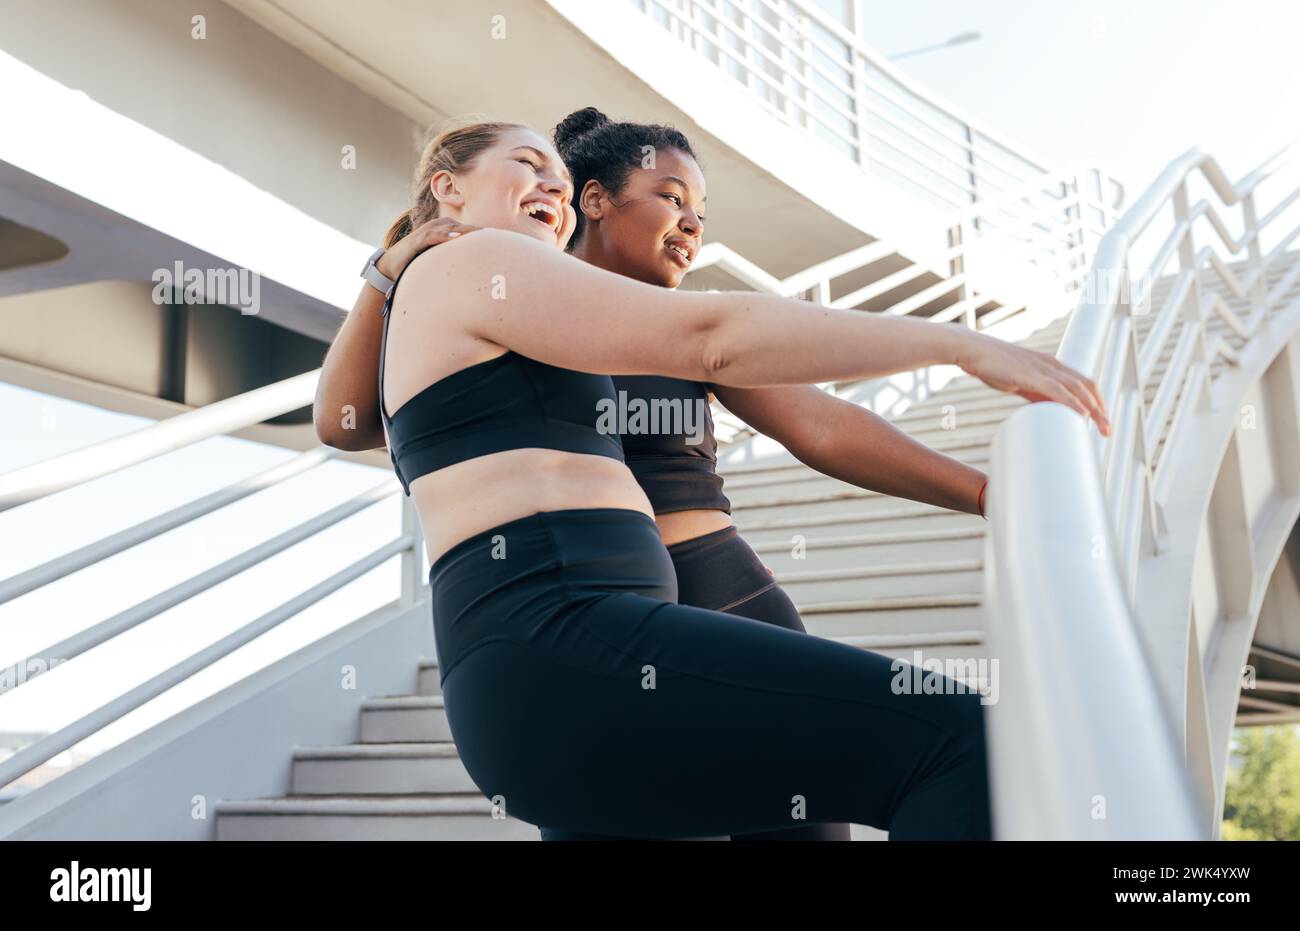 Zwei Sportlerinnen, die nach einem intensiven Workout am Geländer auf der Brücke stehen. Weibliche Freunde in Sportbekleidung, die nach E gute Laune haben Stockfoto